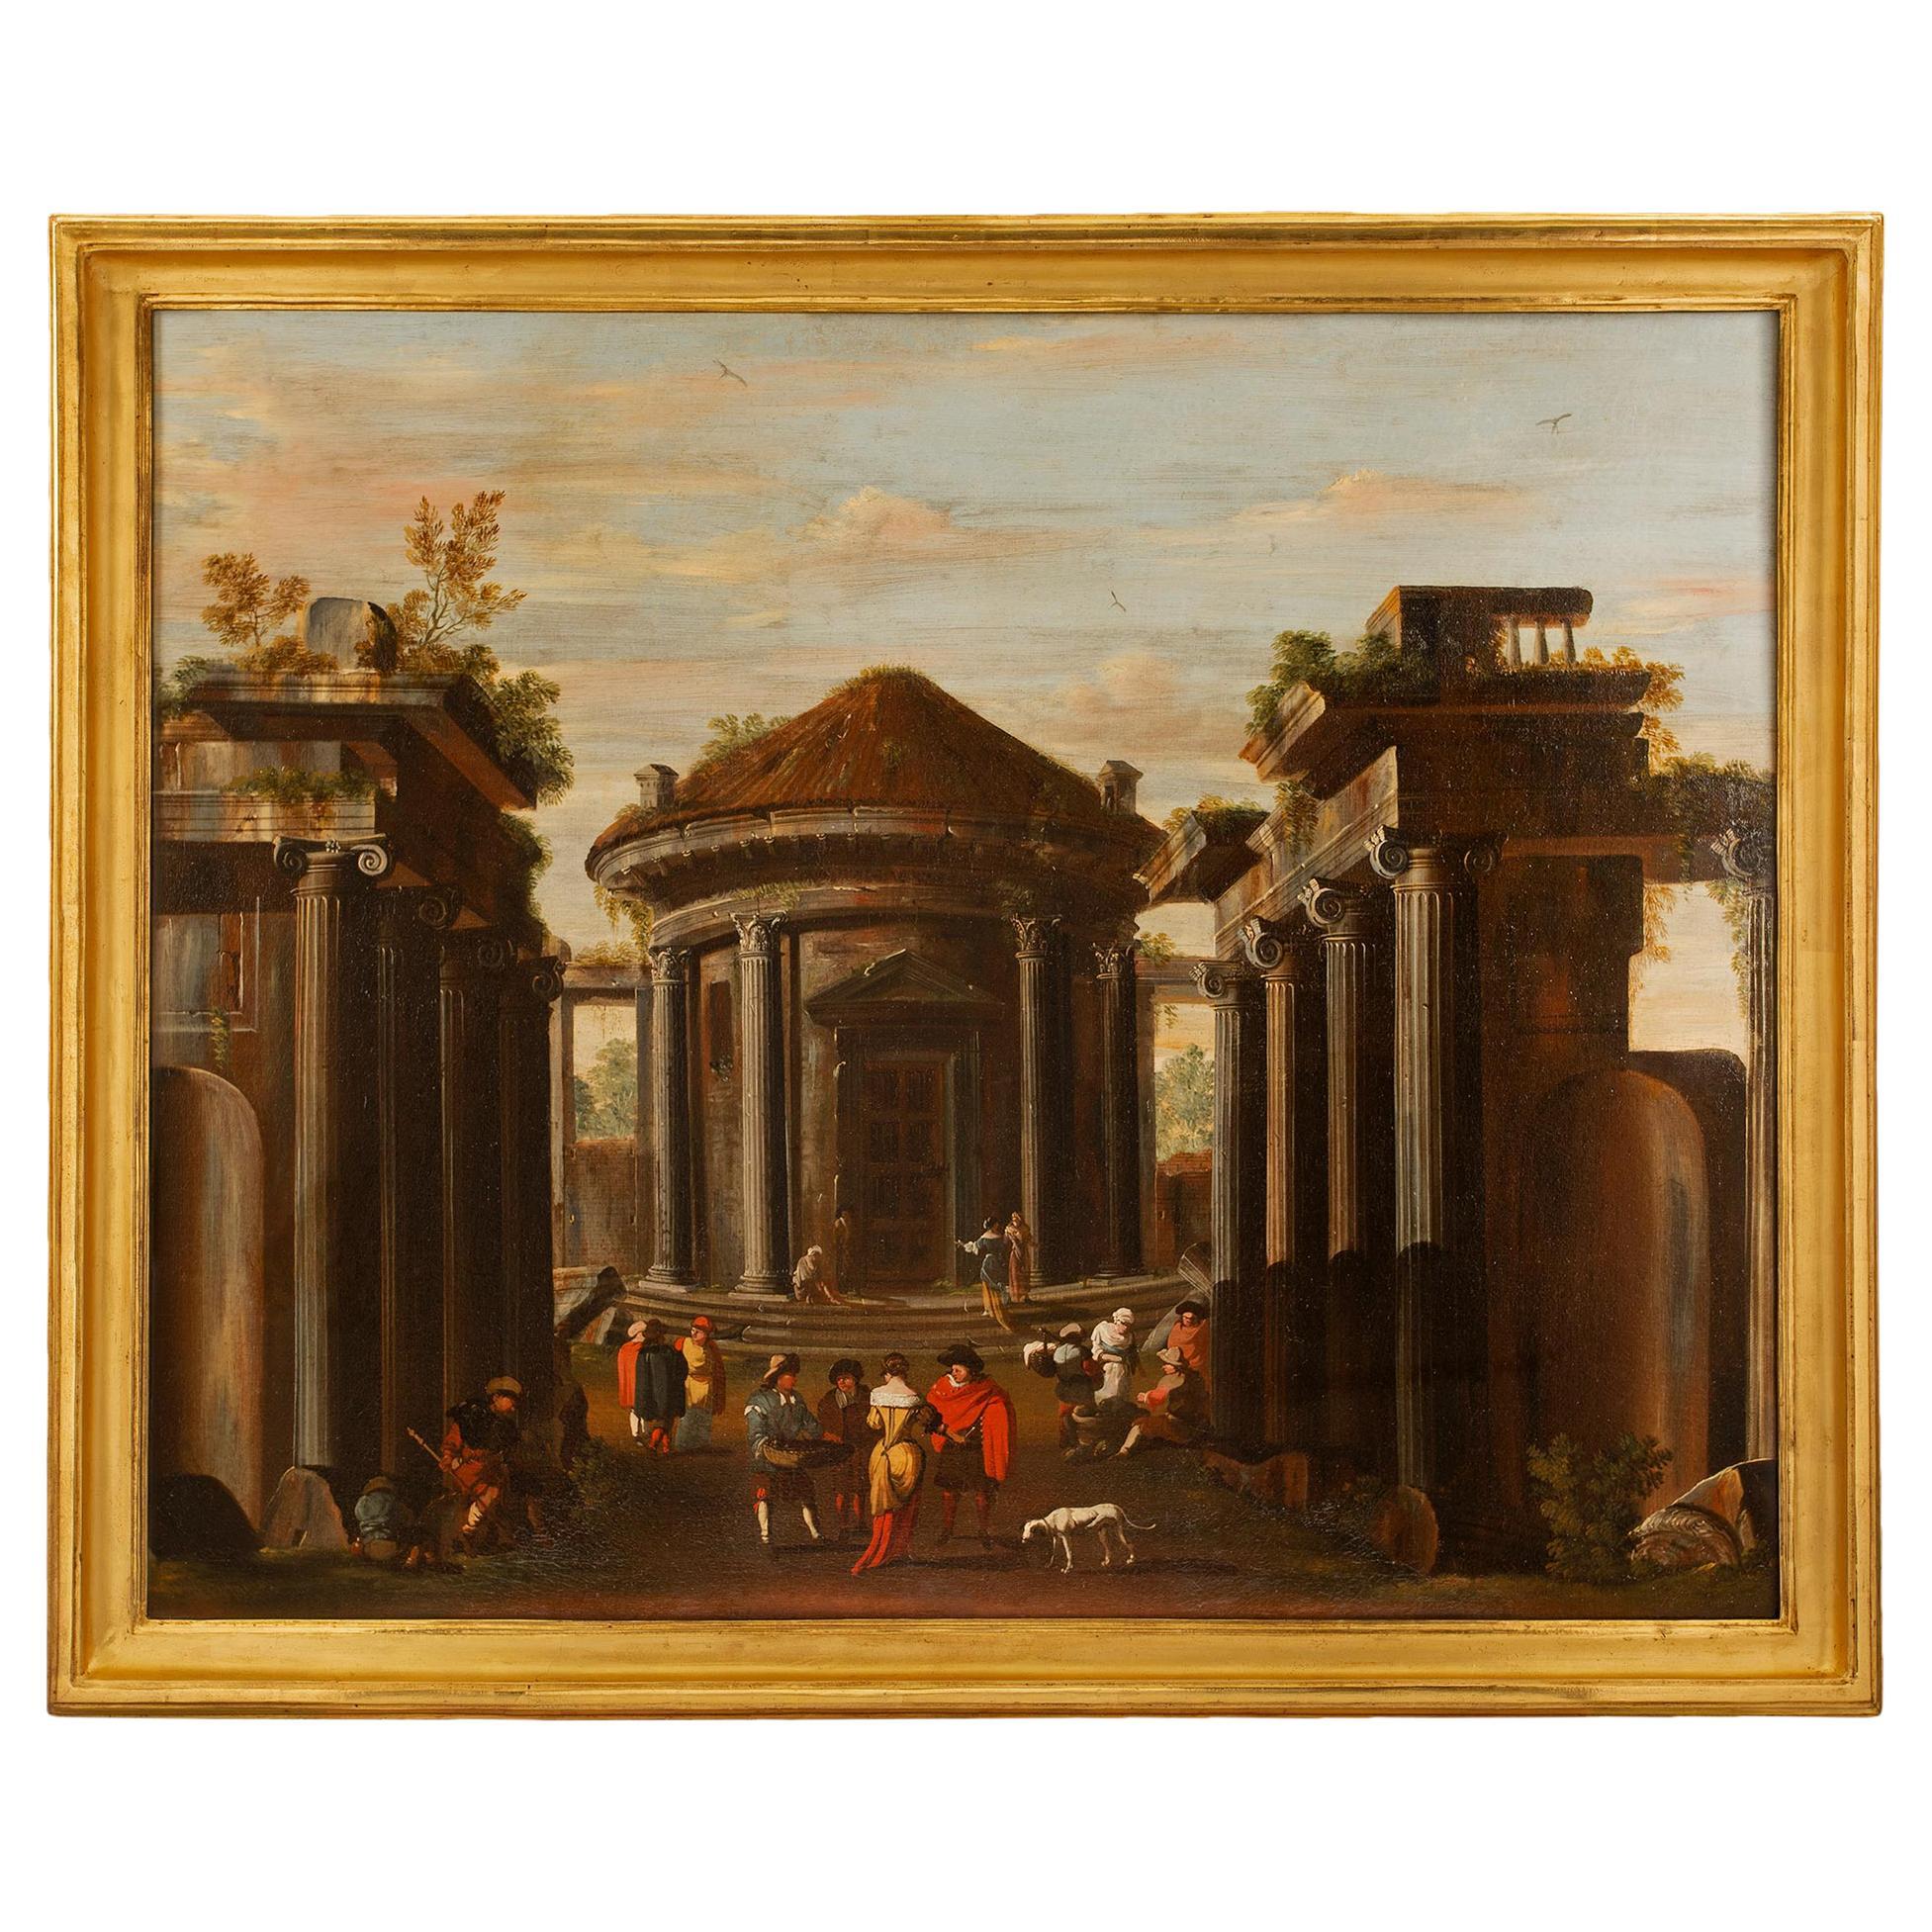 Huile sur toile romaine italienne du début du 18ème siècle, sur le thème de l'architecture